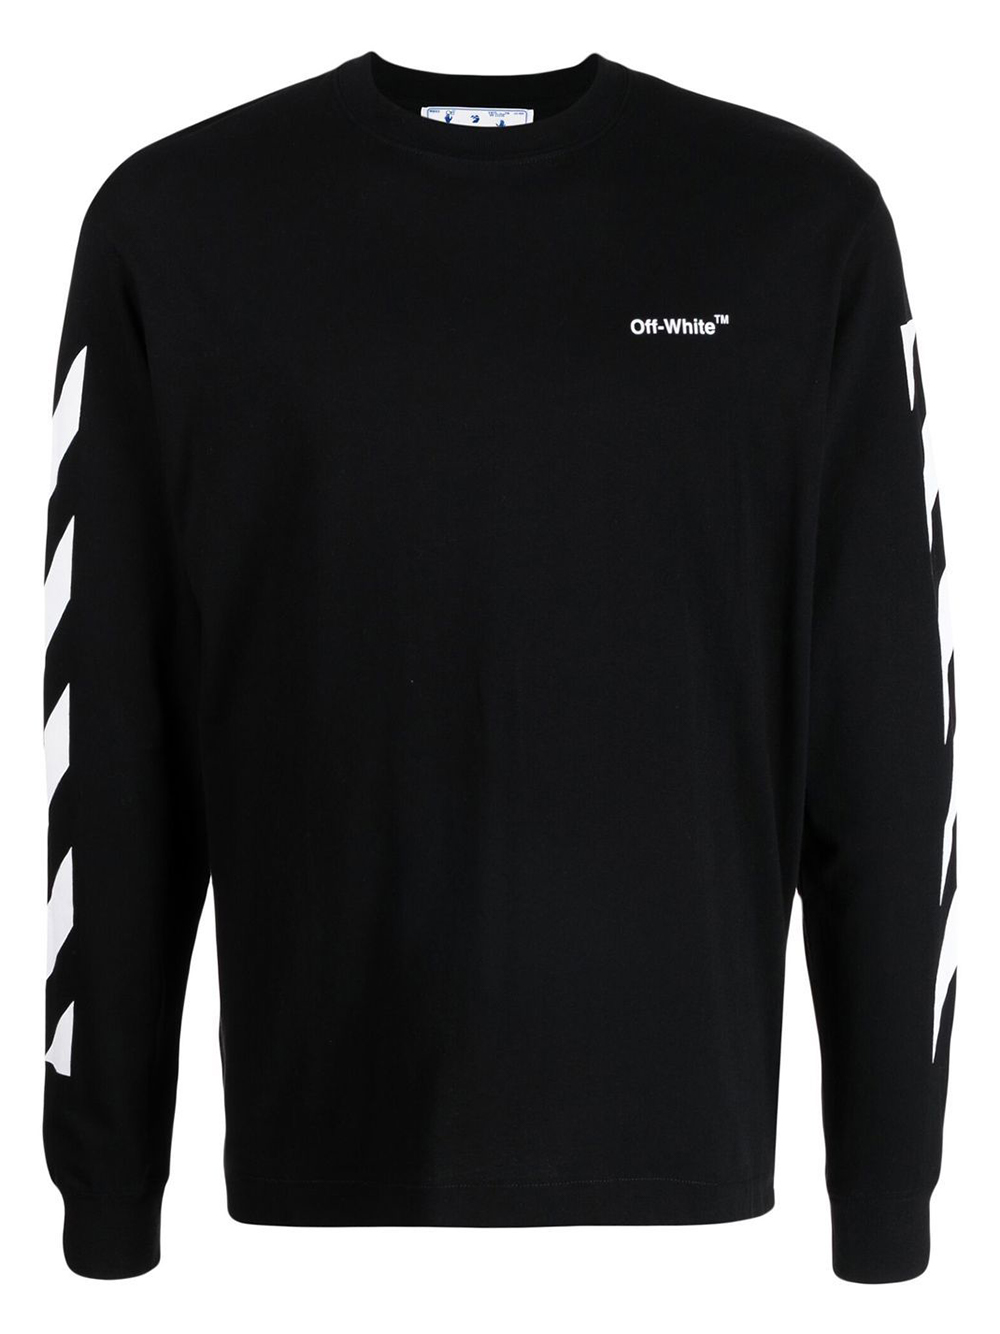 Off-White Diagonal Helvetica Long Sleeve T-Shirt Black/White 